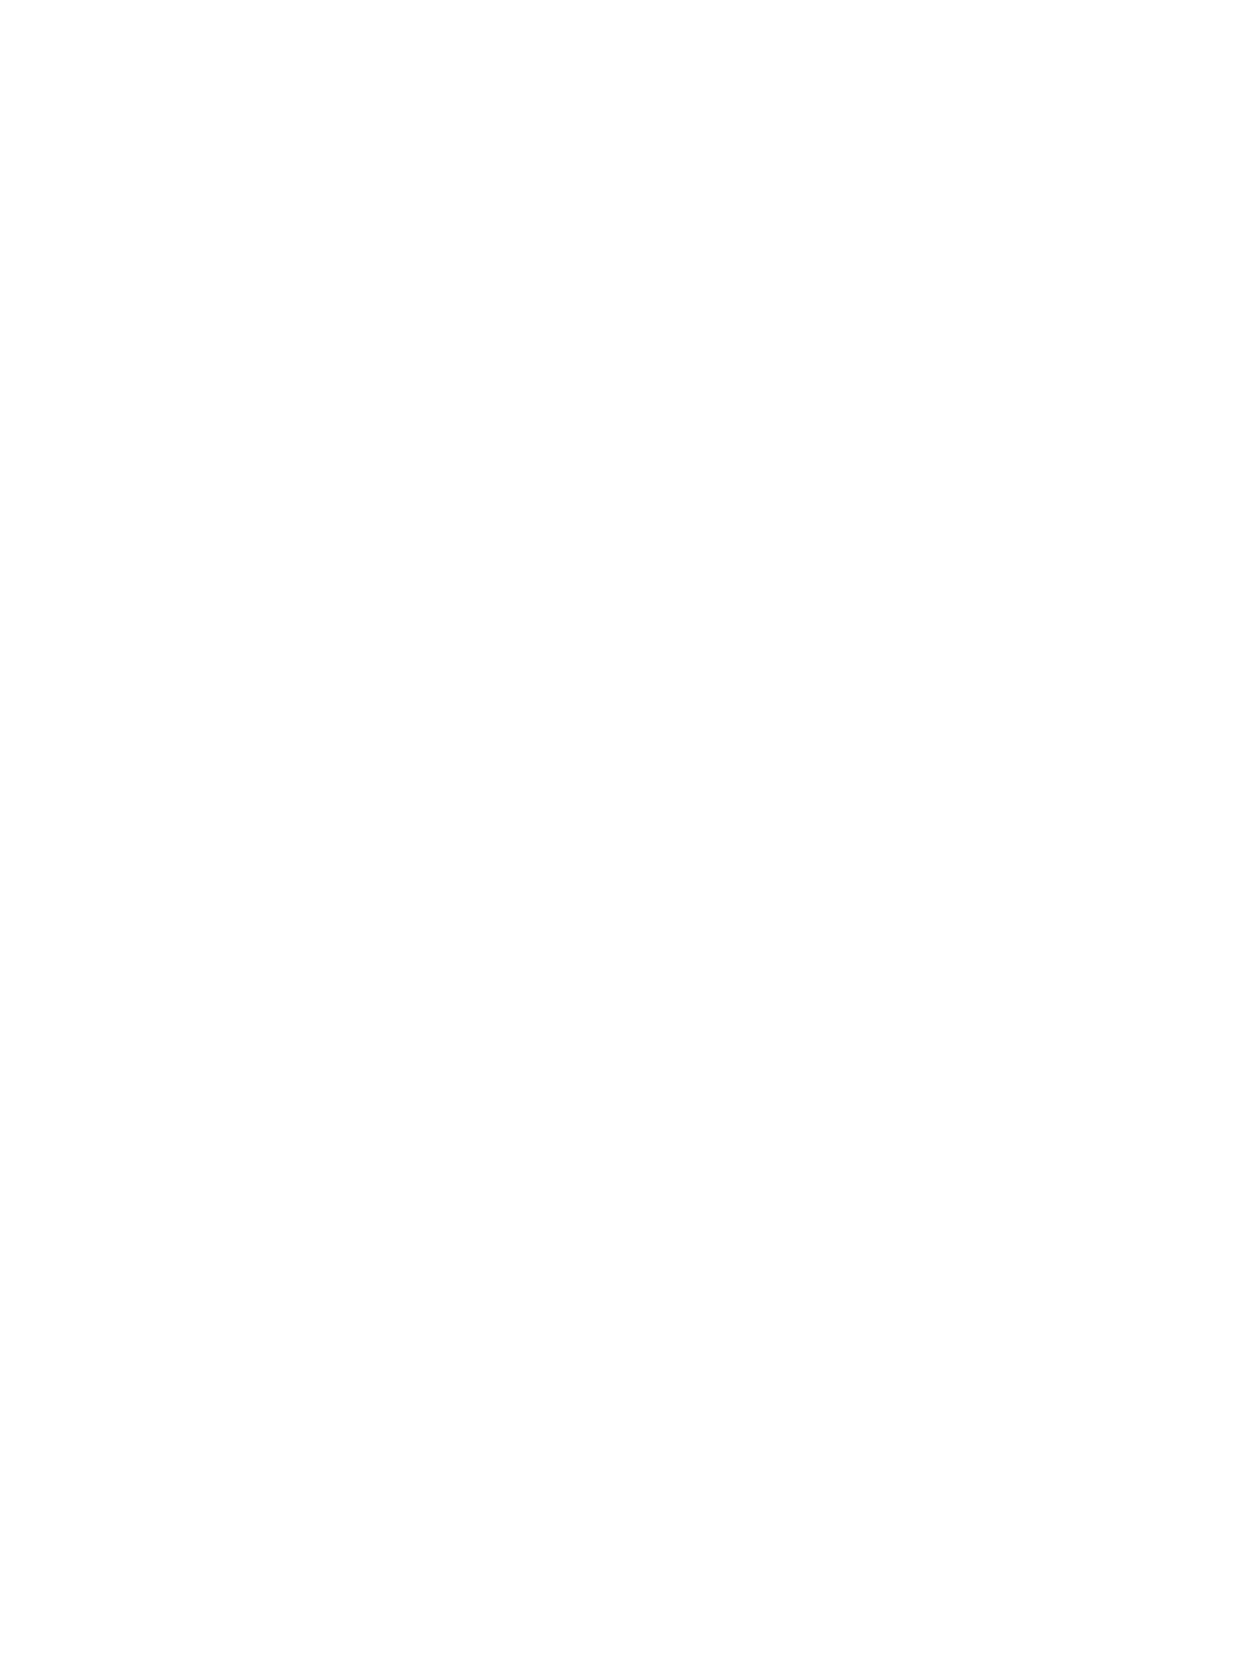 Glen Capri Inn & Suites - Burbank Universal - 6700 San Fernando Rd, Glendale, California 91201